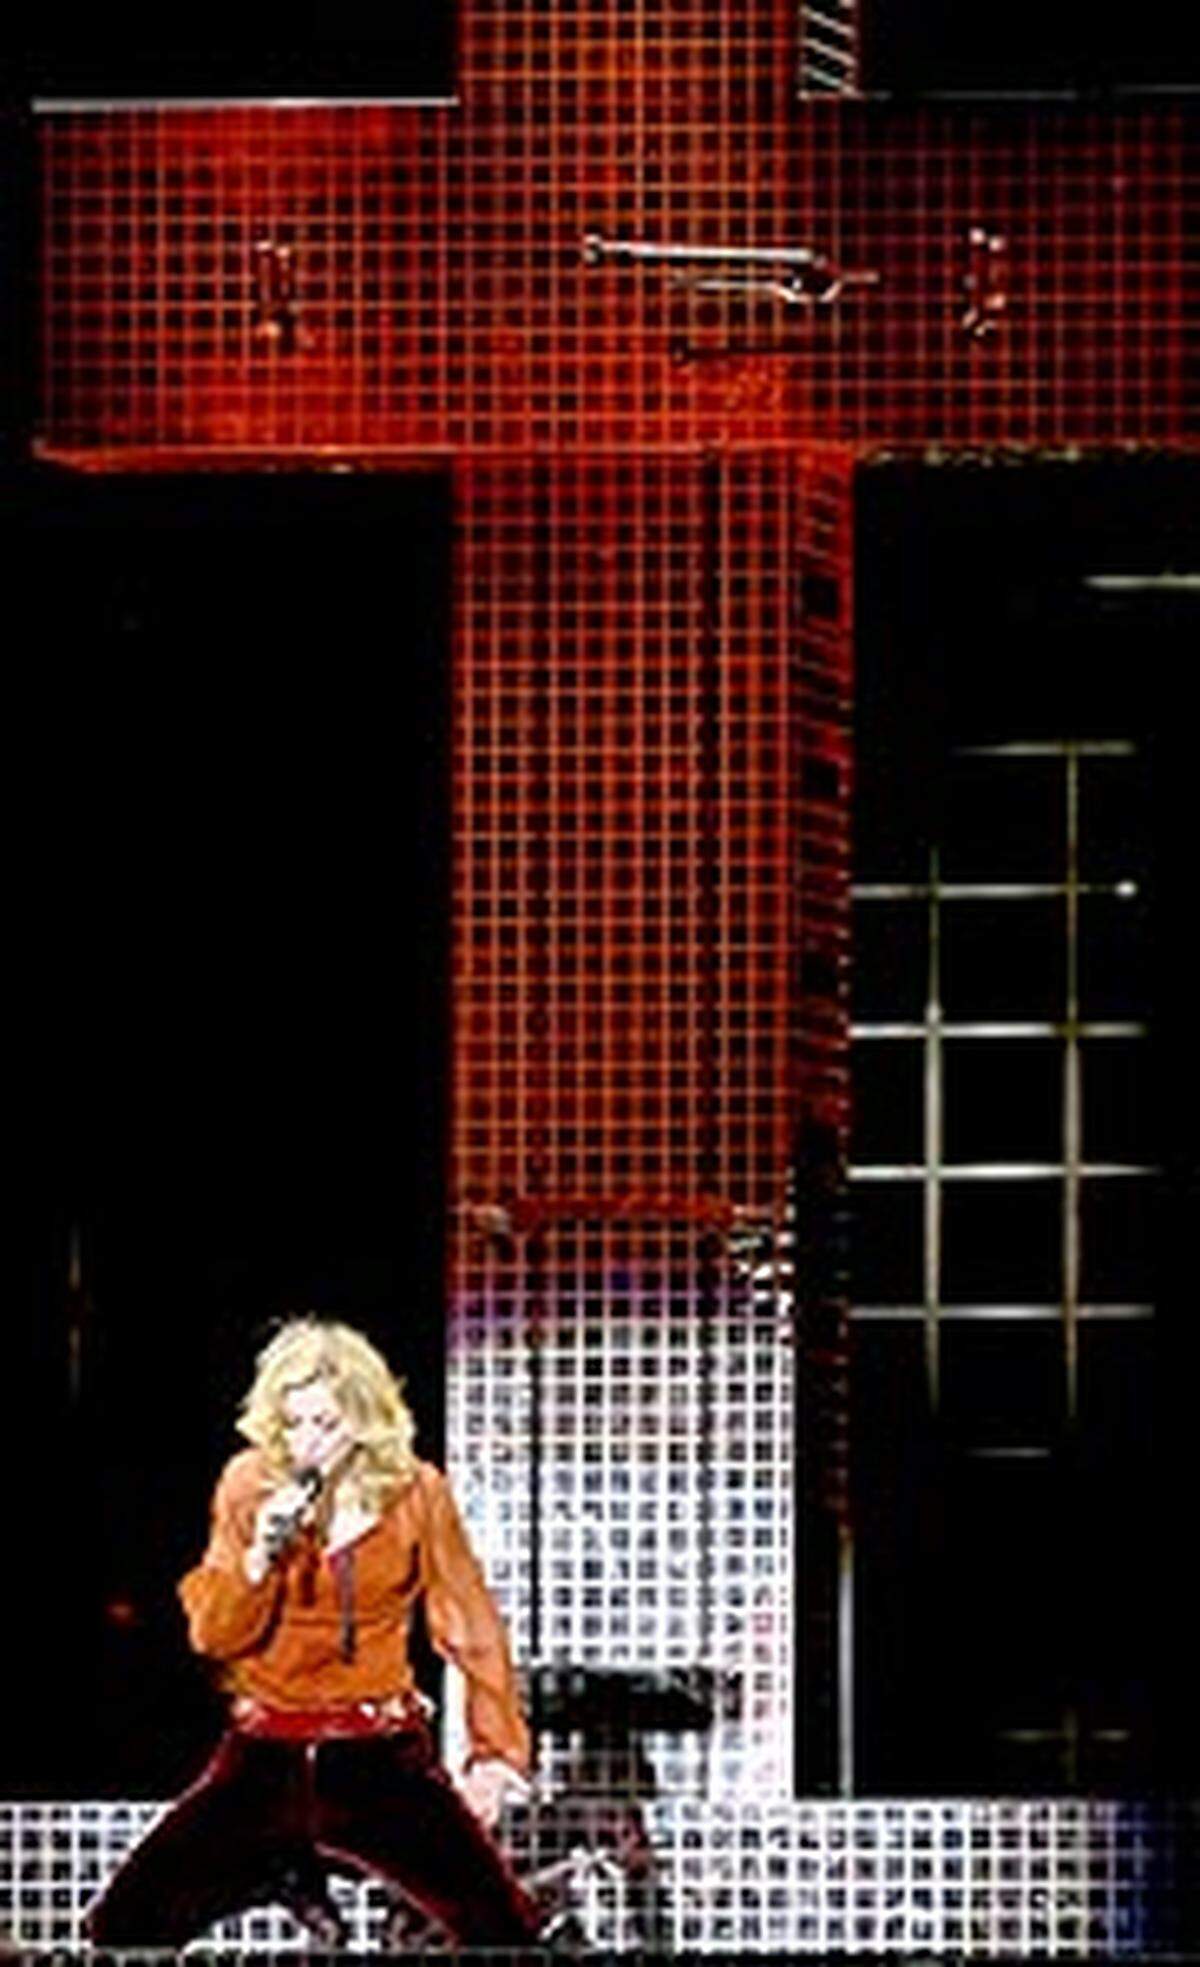 An einem schwarzen Kreuz gelehnt sang US-Superstar Madonna bei Konzerten ihrer Europa-Tournee das Lied "Live to Tell". Ihre Fans waren begeistert, die Kirche empörte sich über das "blasphemische Verhalten". Strafanzeigen wurden zwar zurückgewiesen - Proteste gab es dennoch. Die katholische Kirche beharrte auf ihrer Kritik: "Sich als Christus darzustellen, ist eine Anmaßung ohnegleichen", sagte ein Sprecher des Erzbistums Köln.